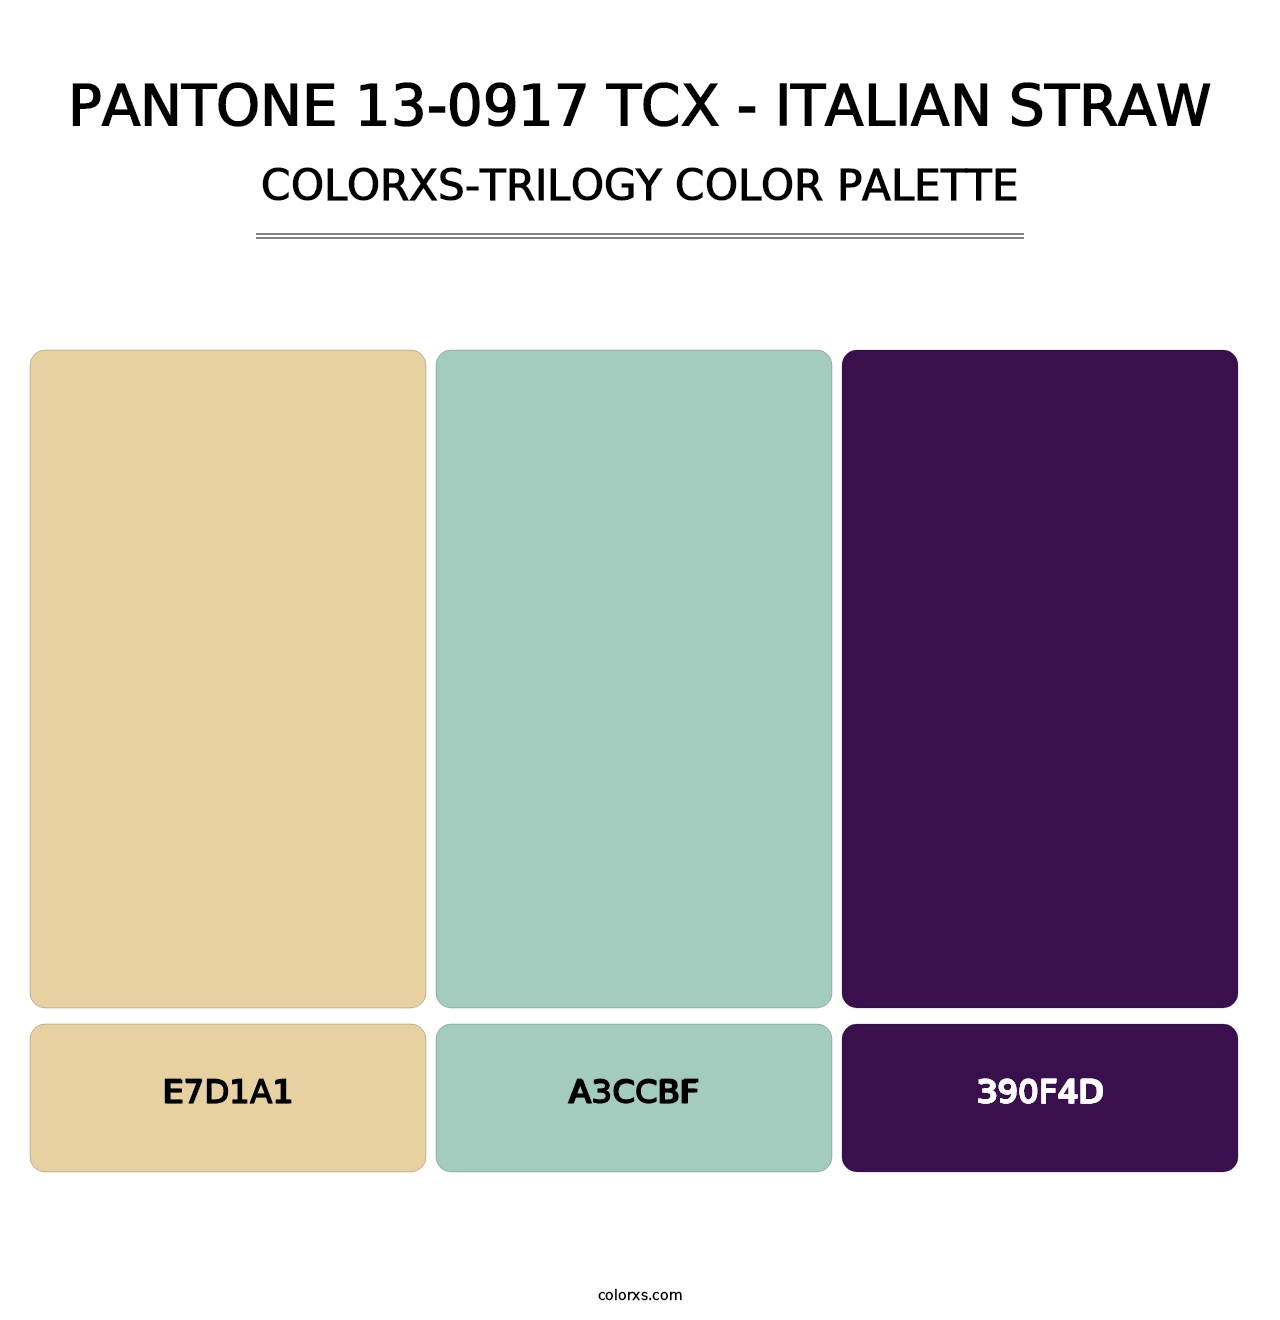 PANTONE 13-0917 TCX - Italian Straw - Colorxs Trilogy Palette